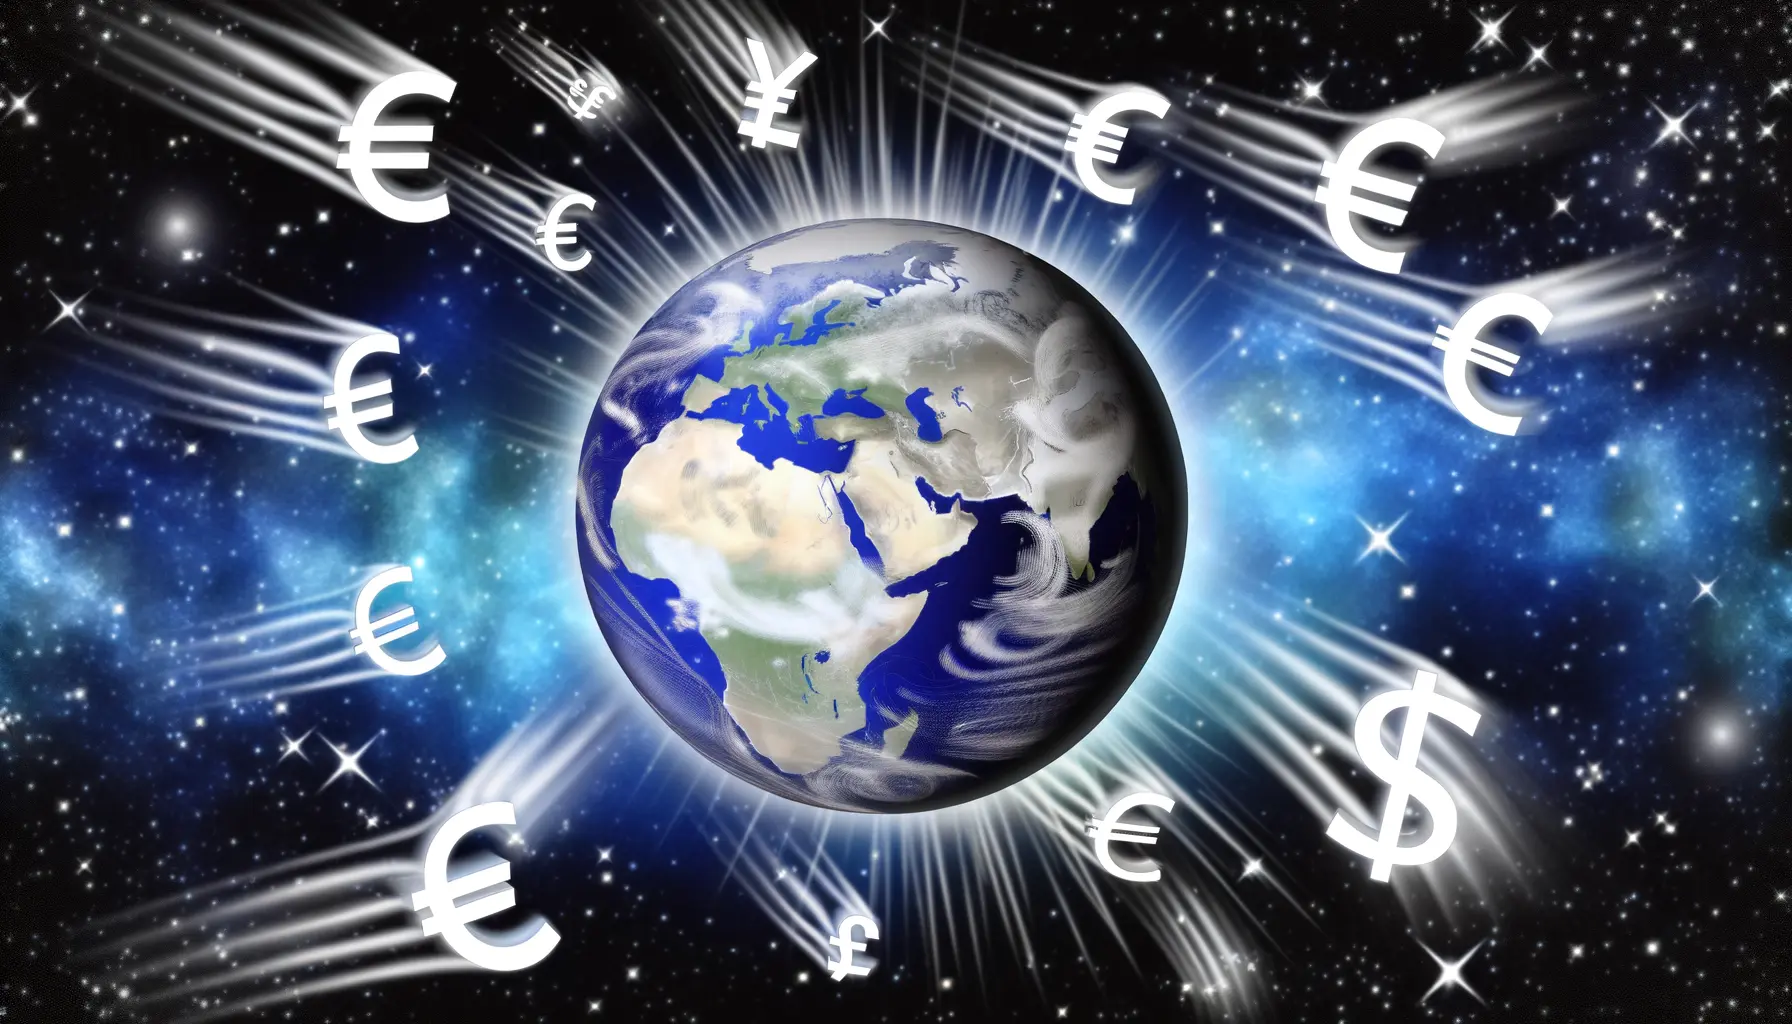 Globuskugel mit Währungssymbolen symbolisiert weltweite wirtschaftliche Verflechtungen